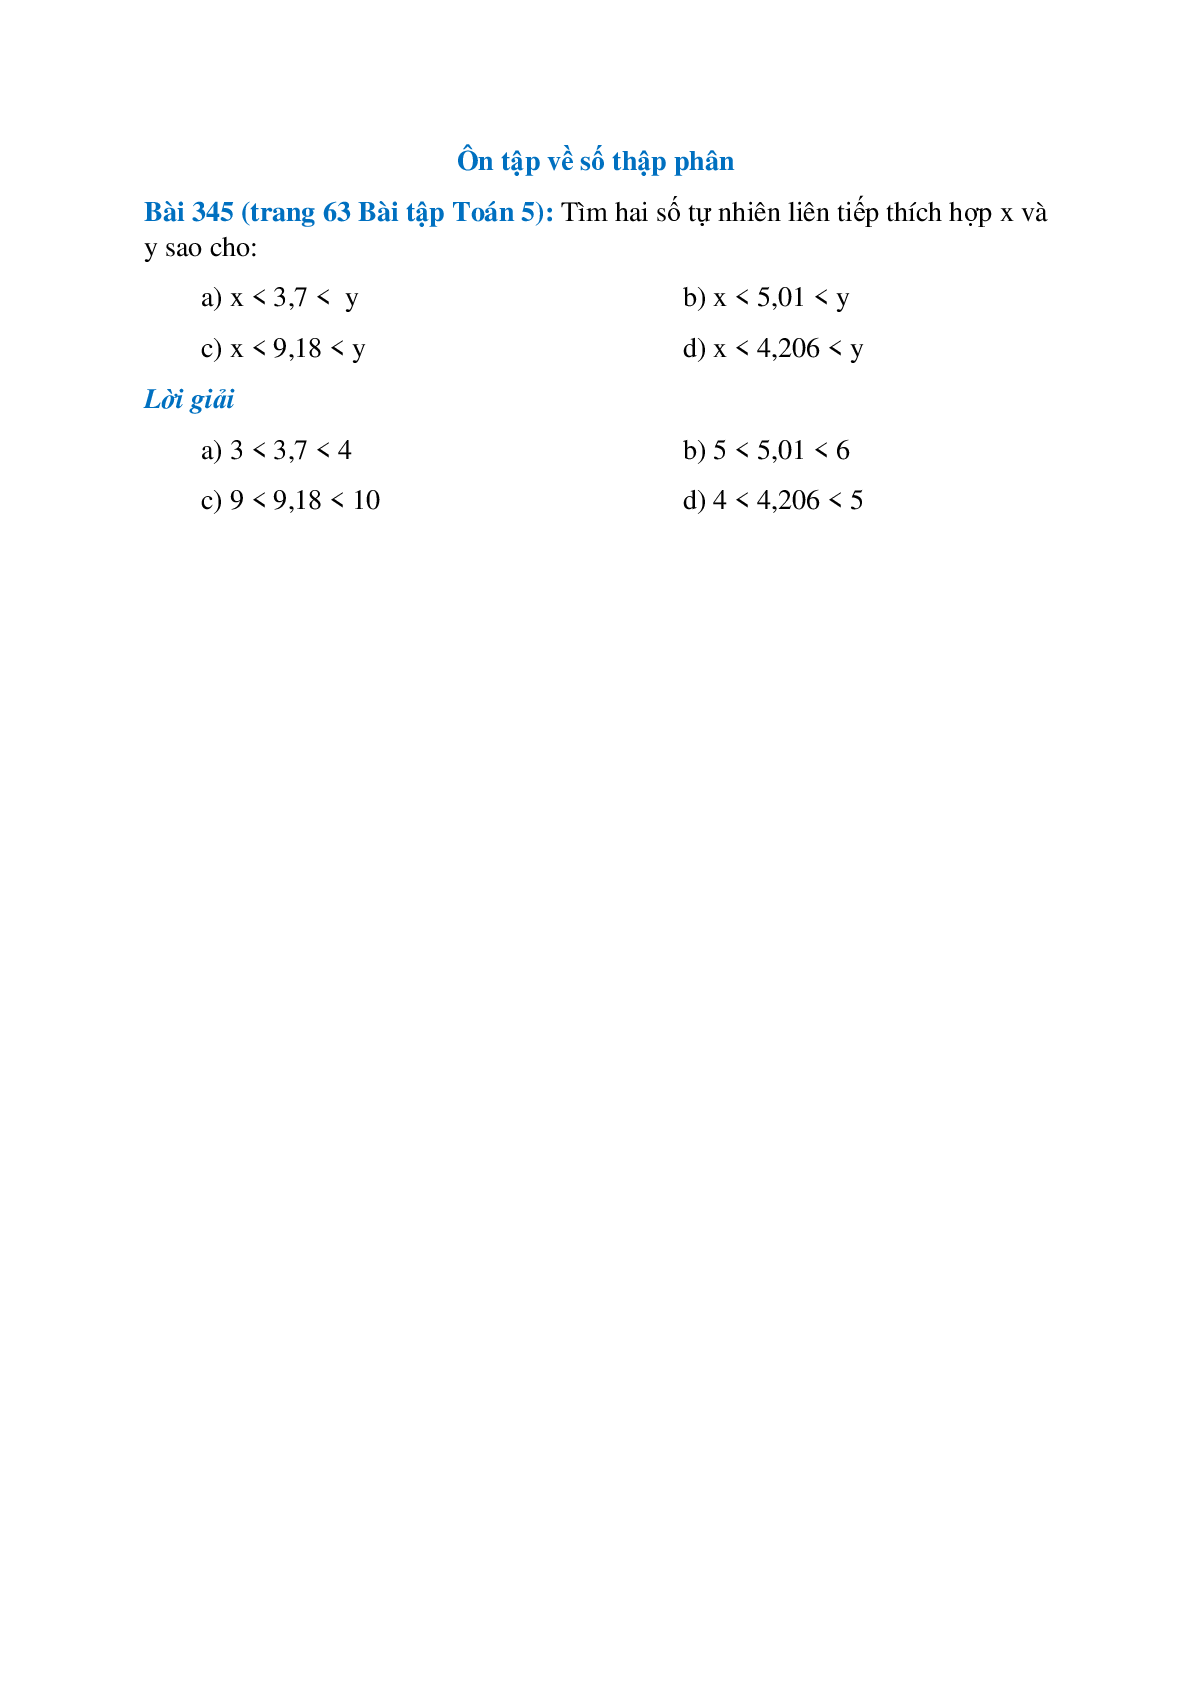 Tìm hai số tự nhiên liên tiếp thích hợp x và y sao cho: x < 3,7 <  y  (trang 1)